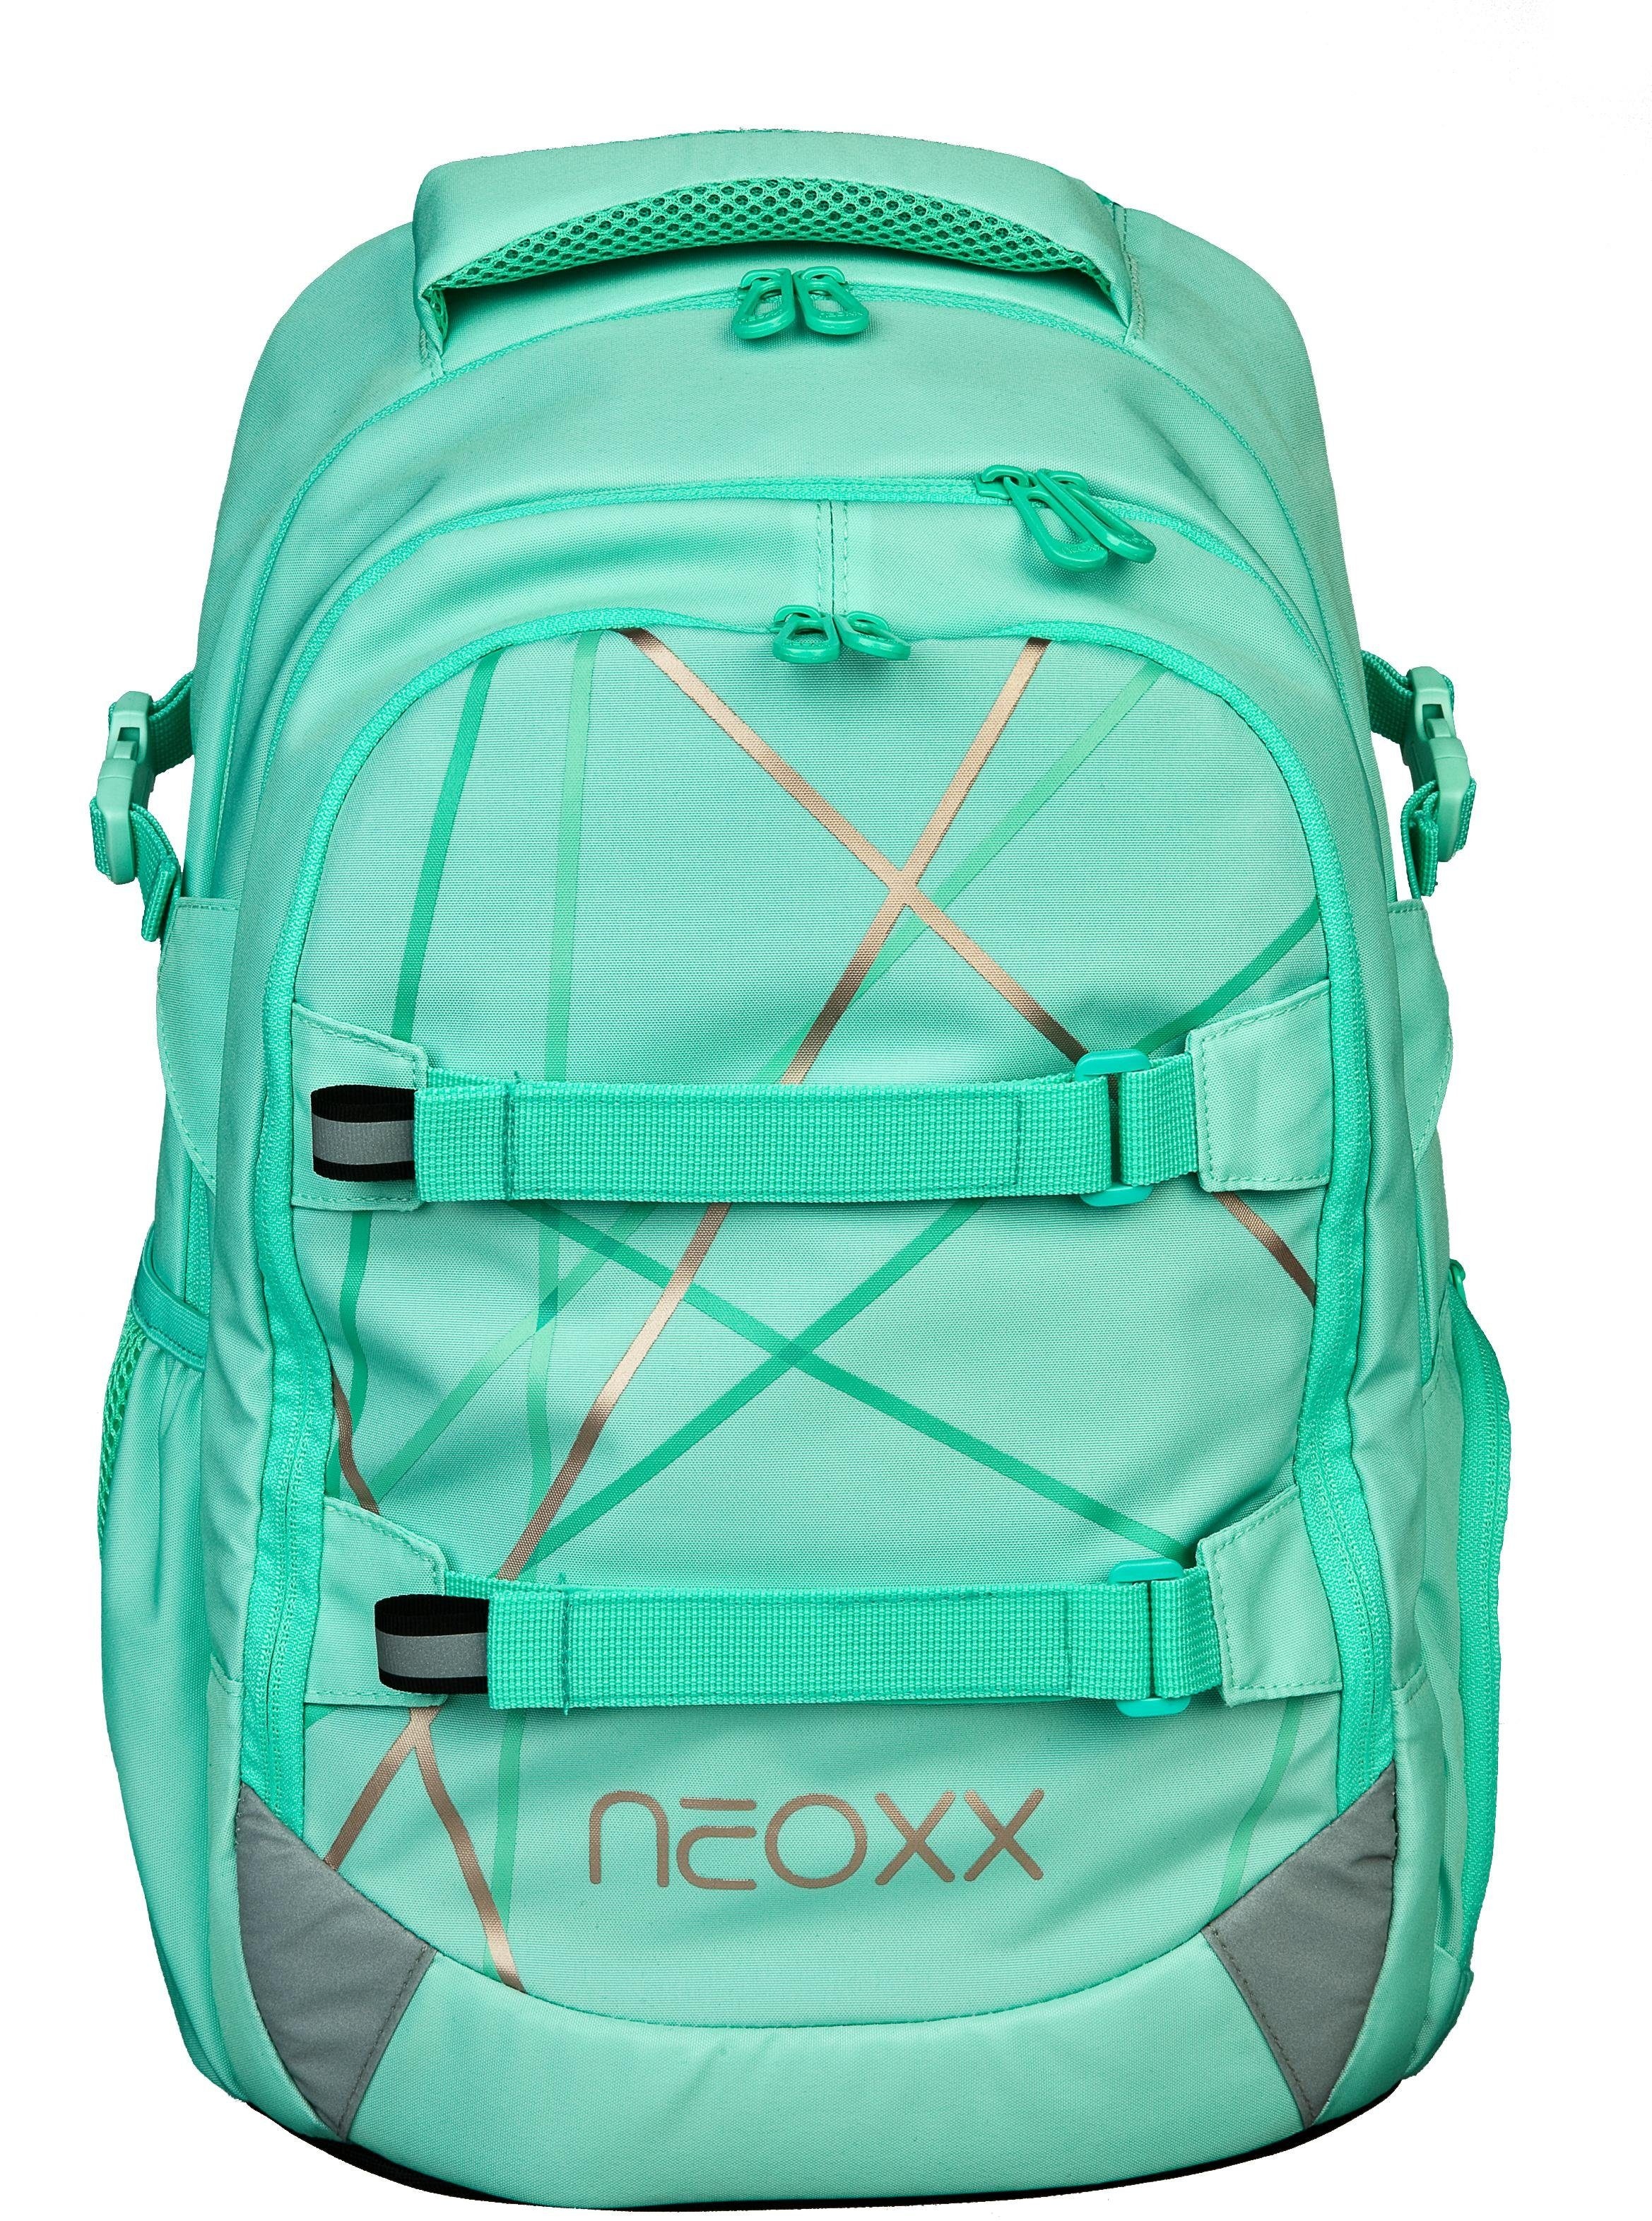 neoxx Schulrucksack »Active, Mint be«, versandkostenfrei to Details, aus auf recycelten reflektierende PET-Flaschen